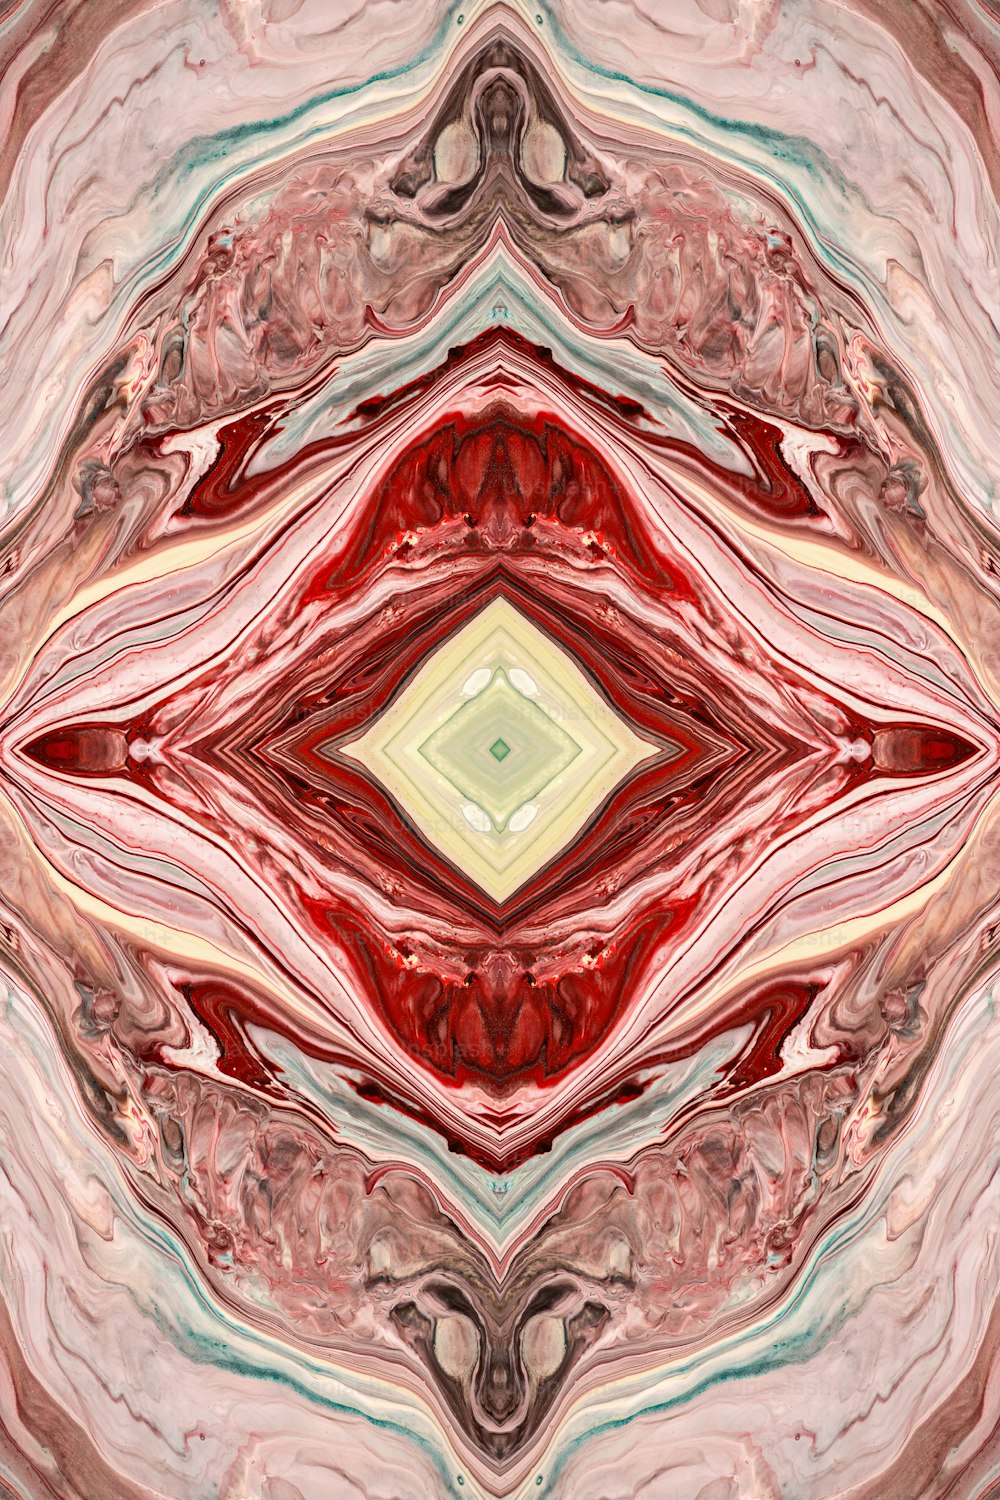 Une image abstraite d’un objet rouge et blanc